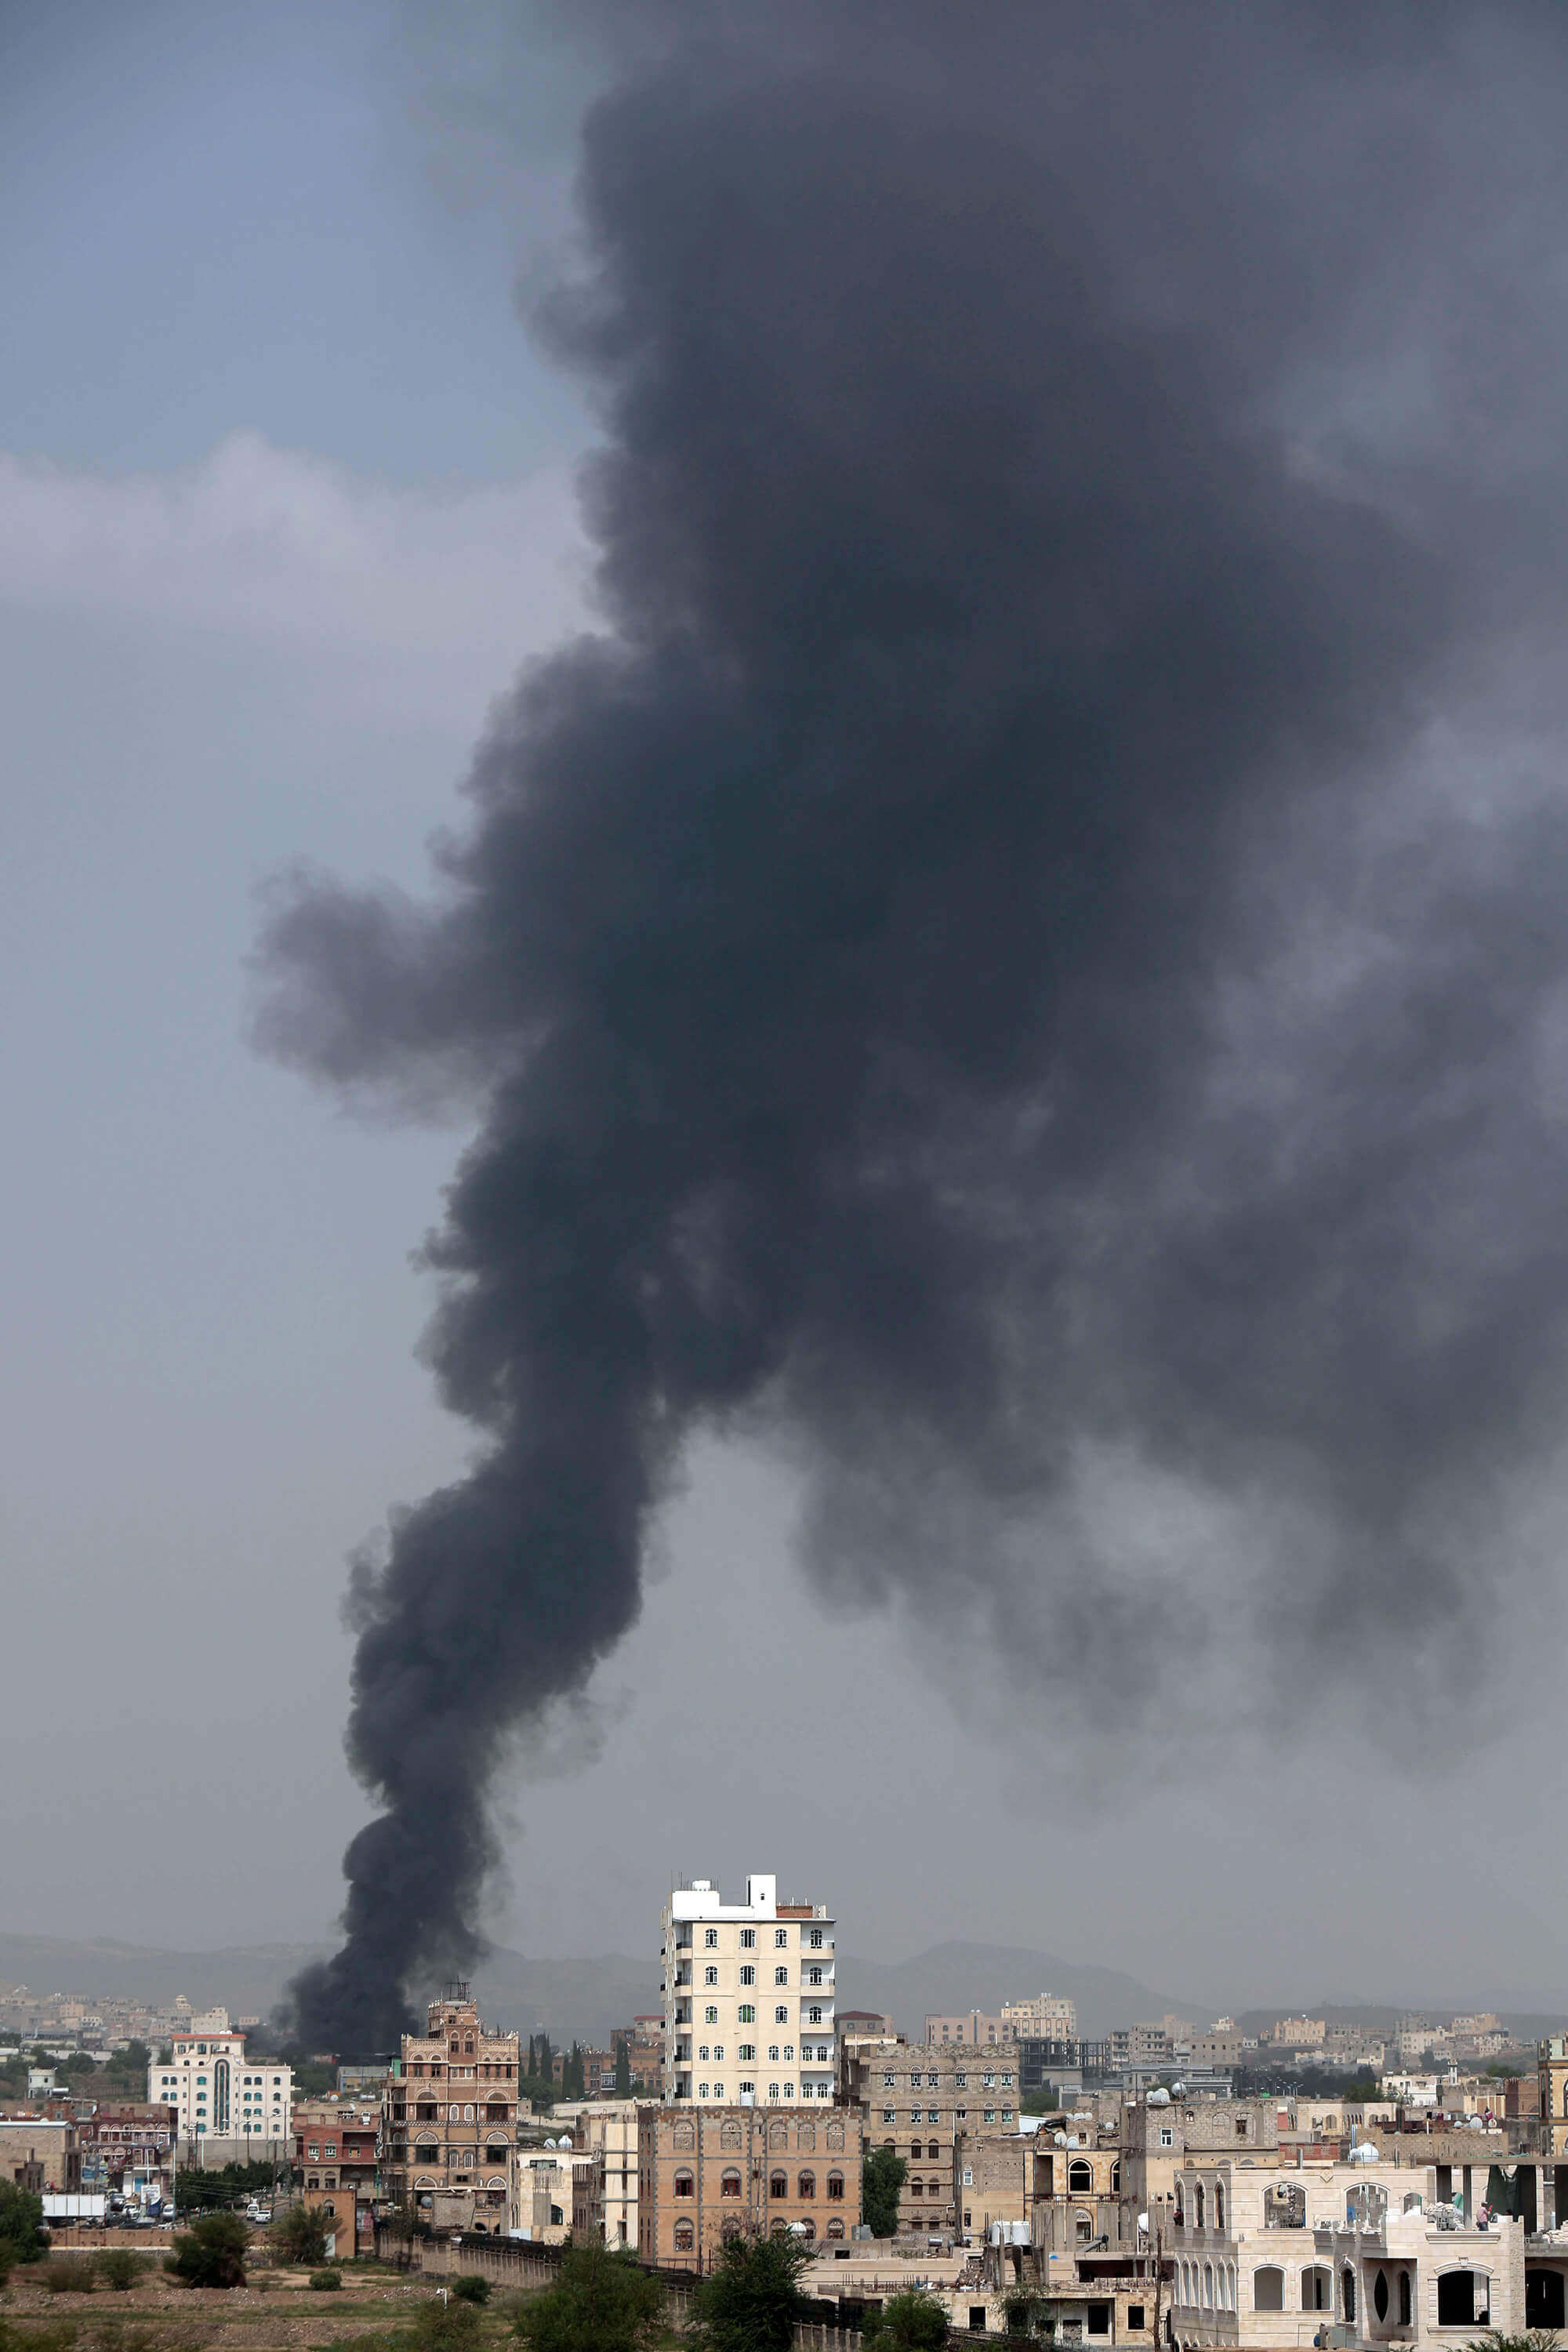 Image of smoke from an airstrike in Yemen